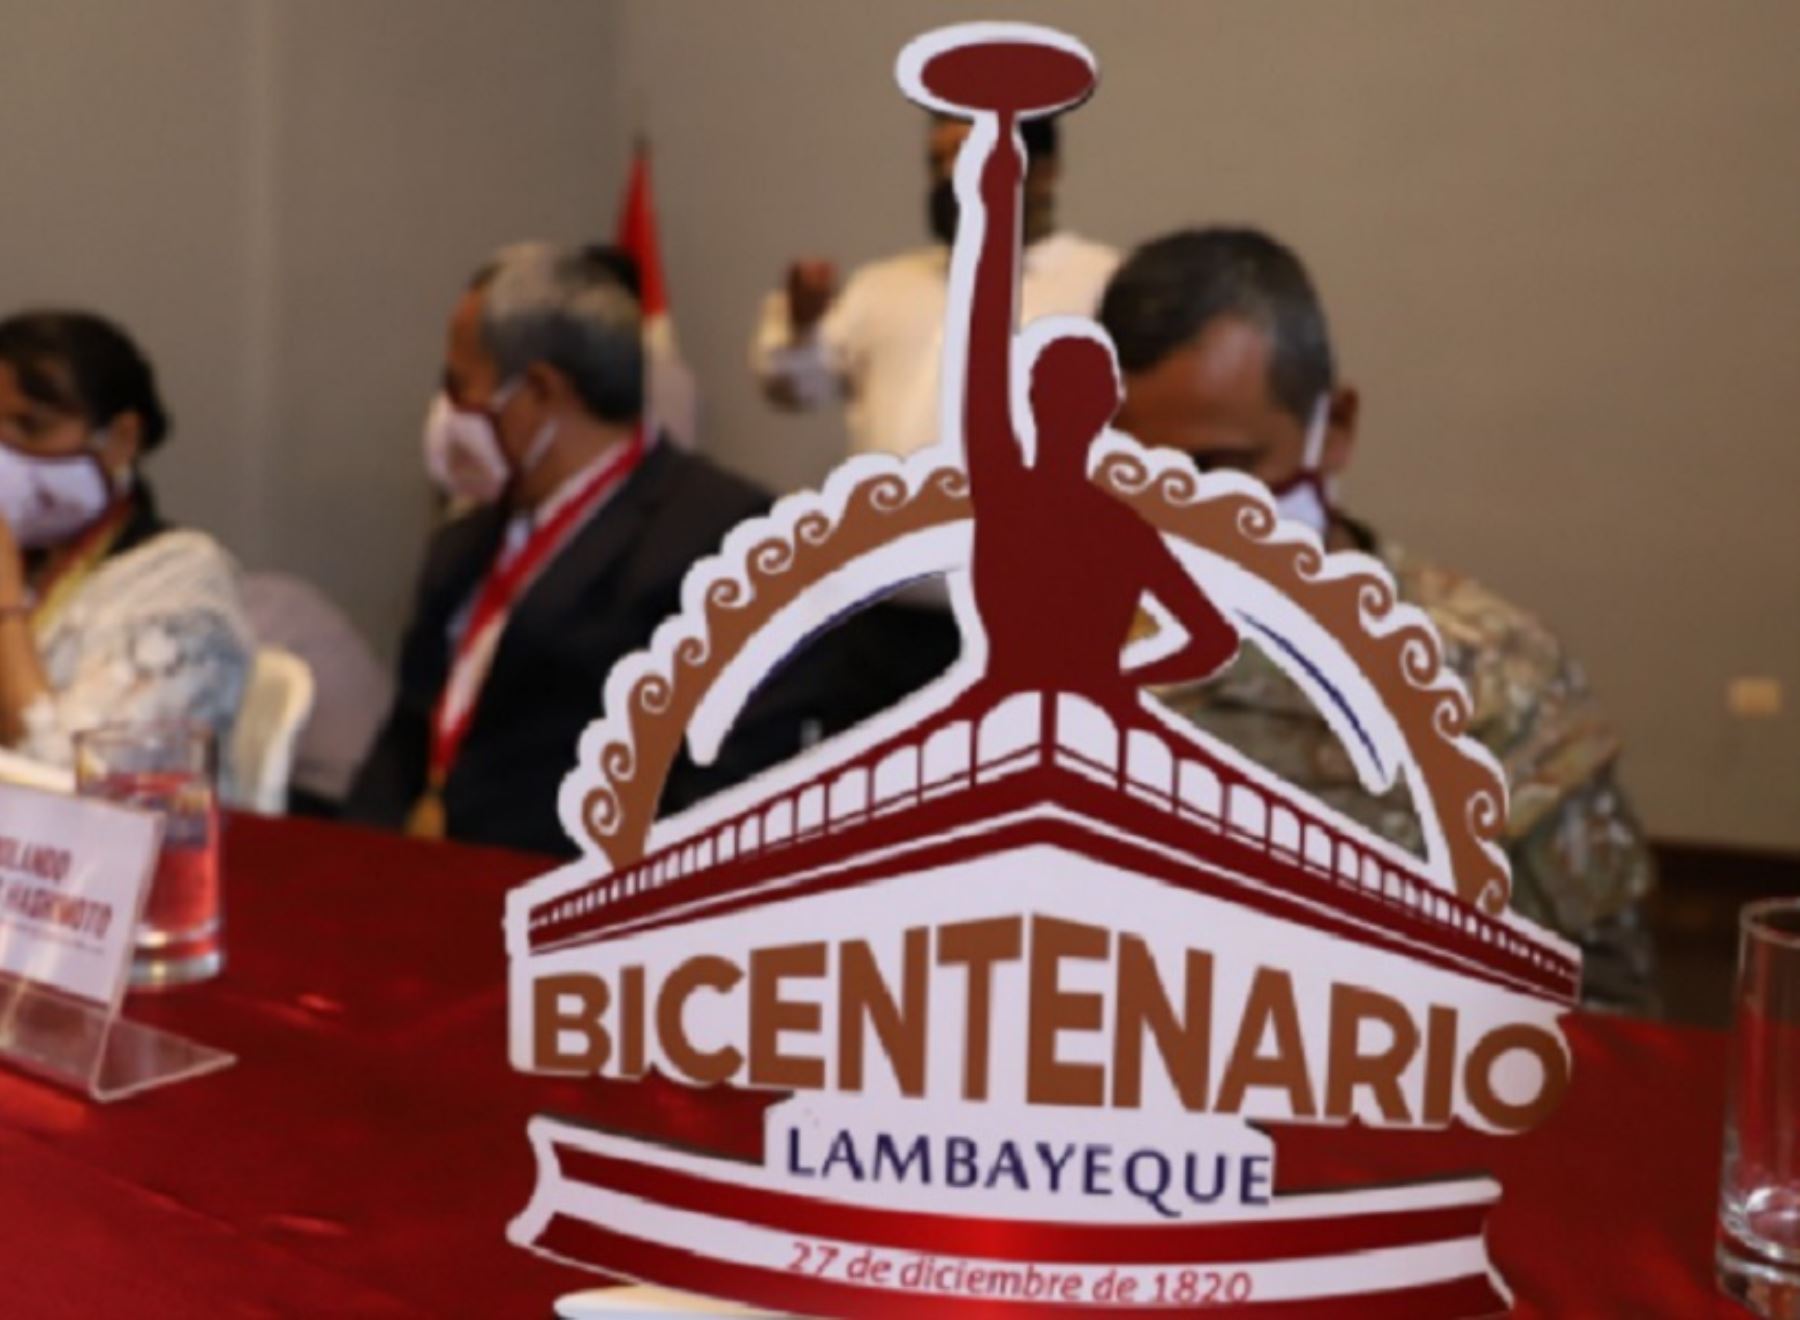 Lambayeque ha programado diversas actividades para celebrar los 200 años de la proclamación de su independencia. ANDINA/Difusión